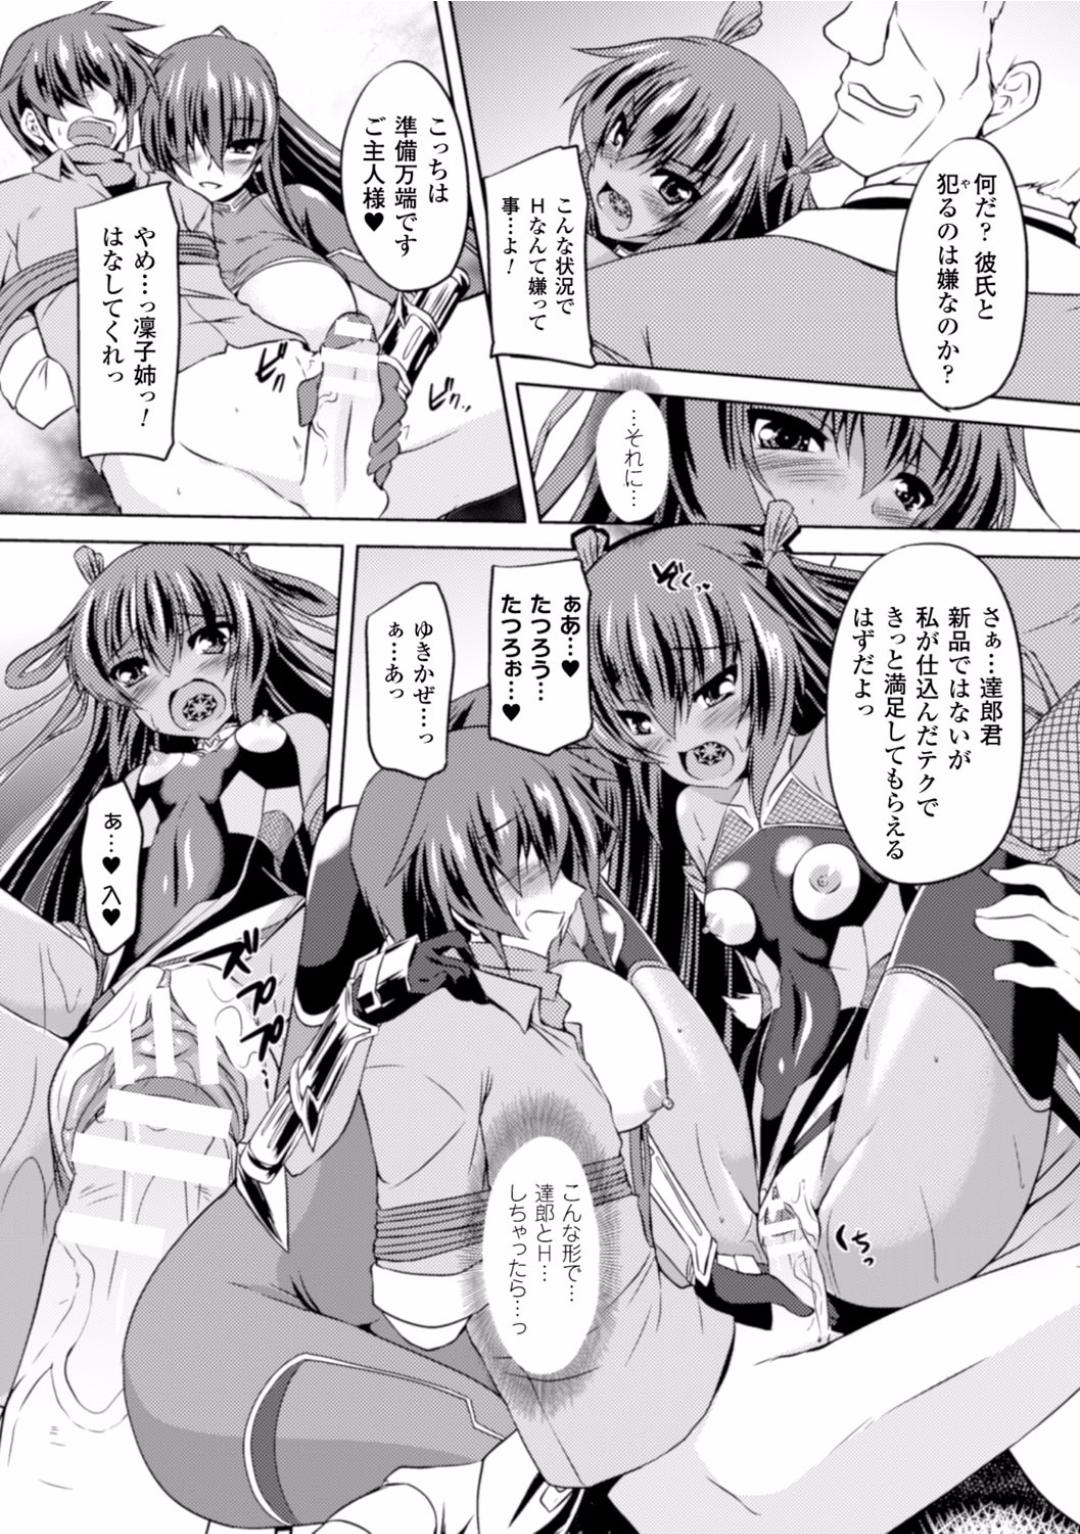 Bed Seigi no Heroine Kangoku File Vol. 2 - Taimanin yukikaze Stream - Page 9